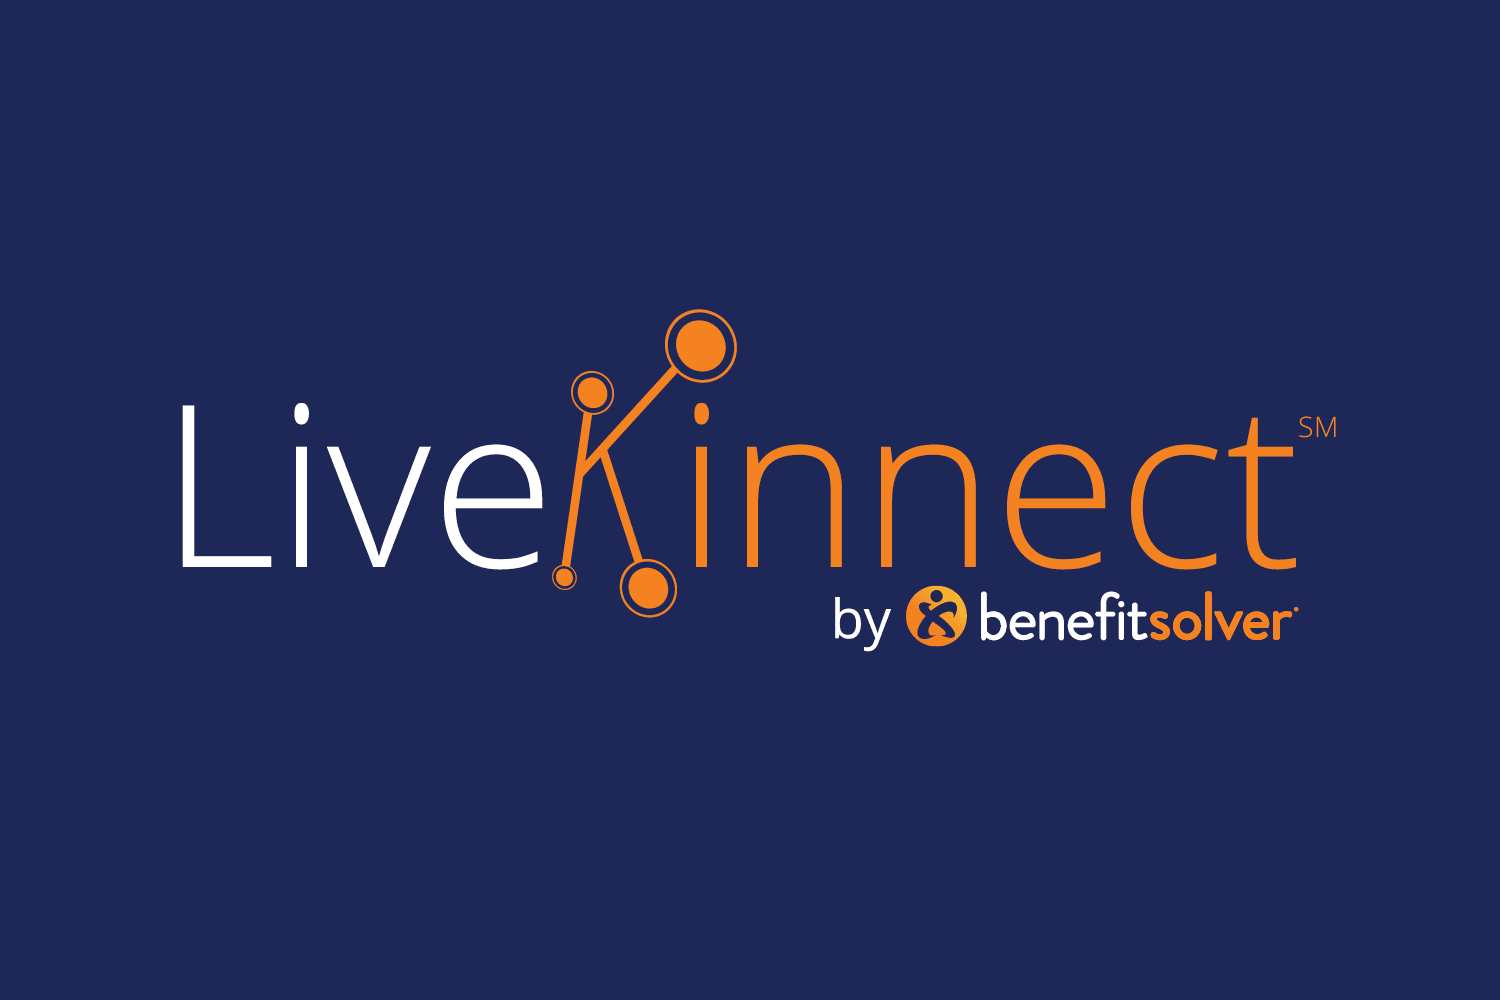 businessolver-livekinnect